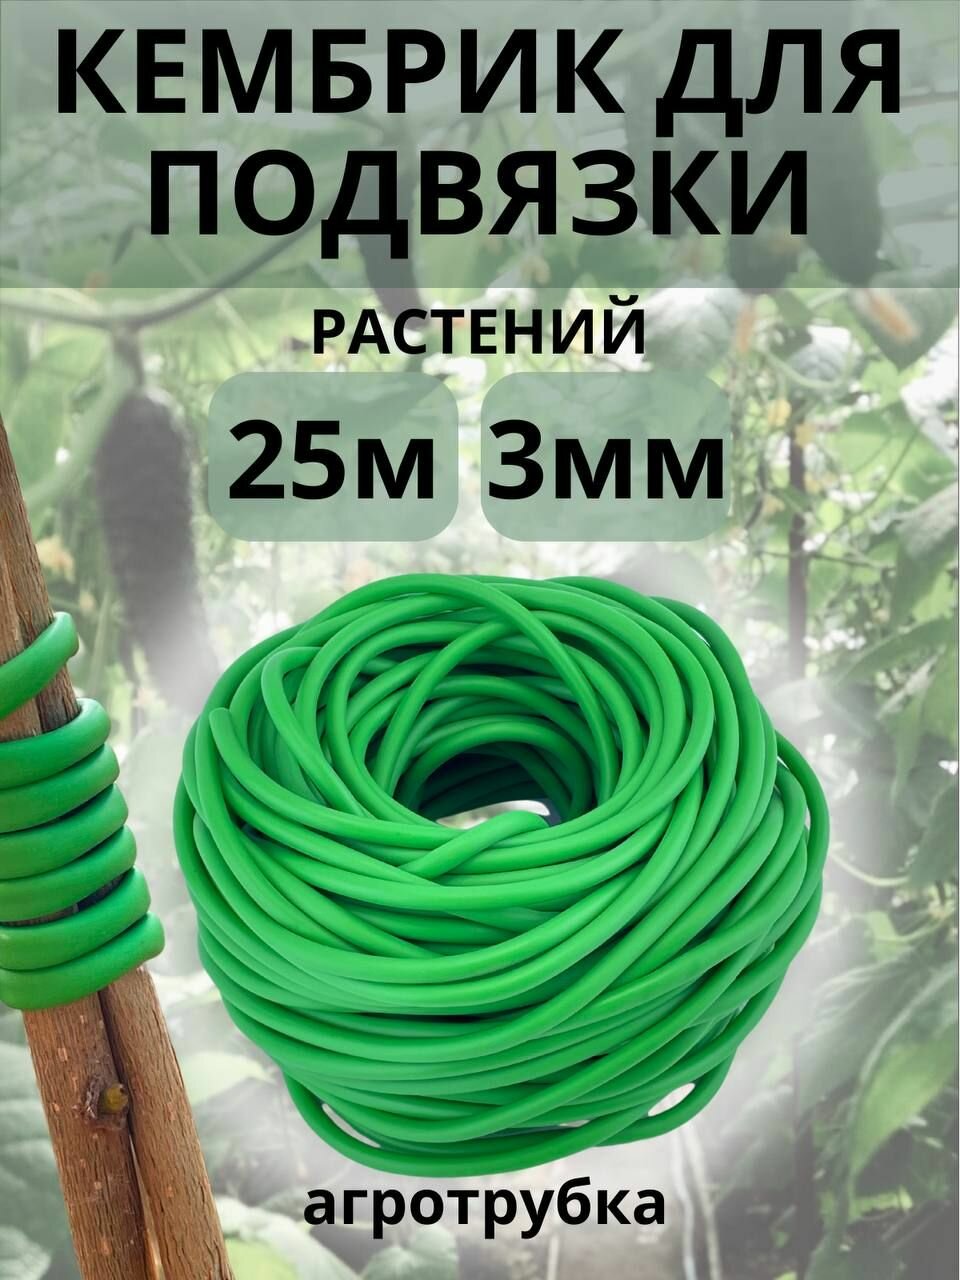 Подвязка для растений Кембрик 3 мм/ 25 метров